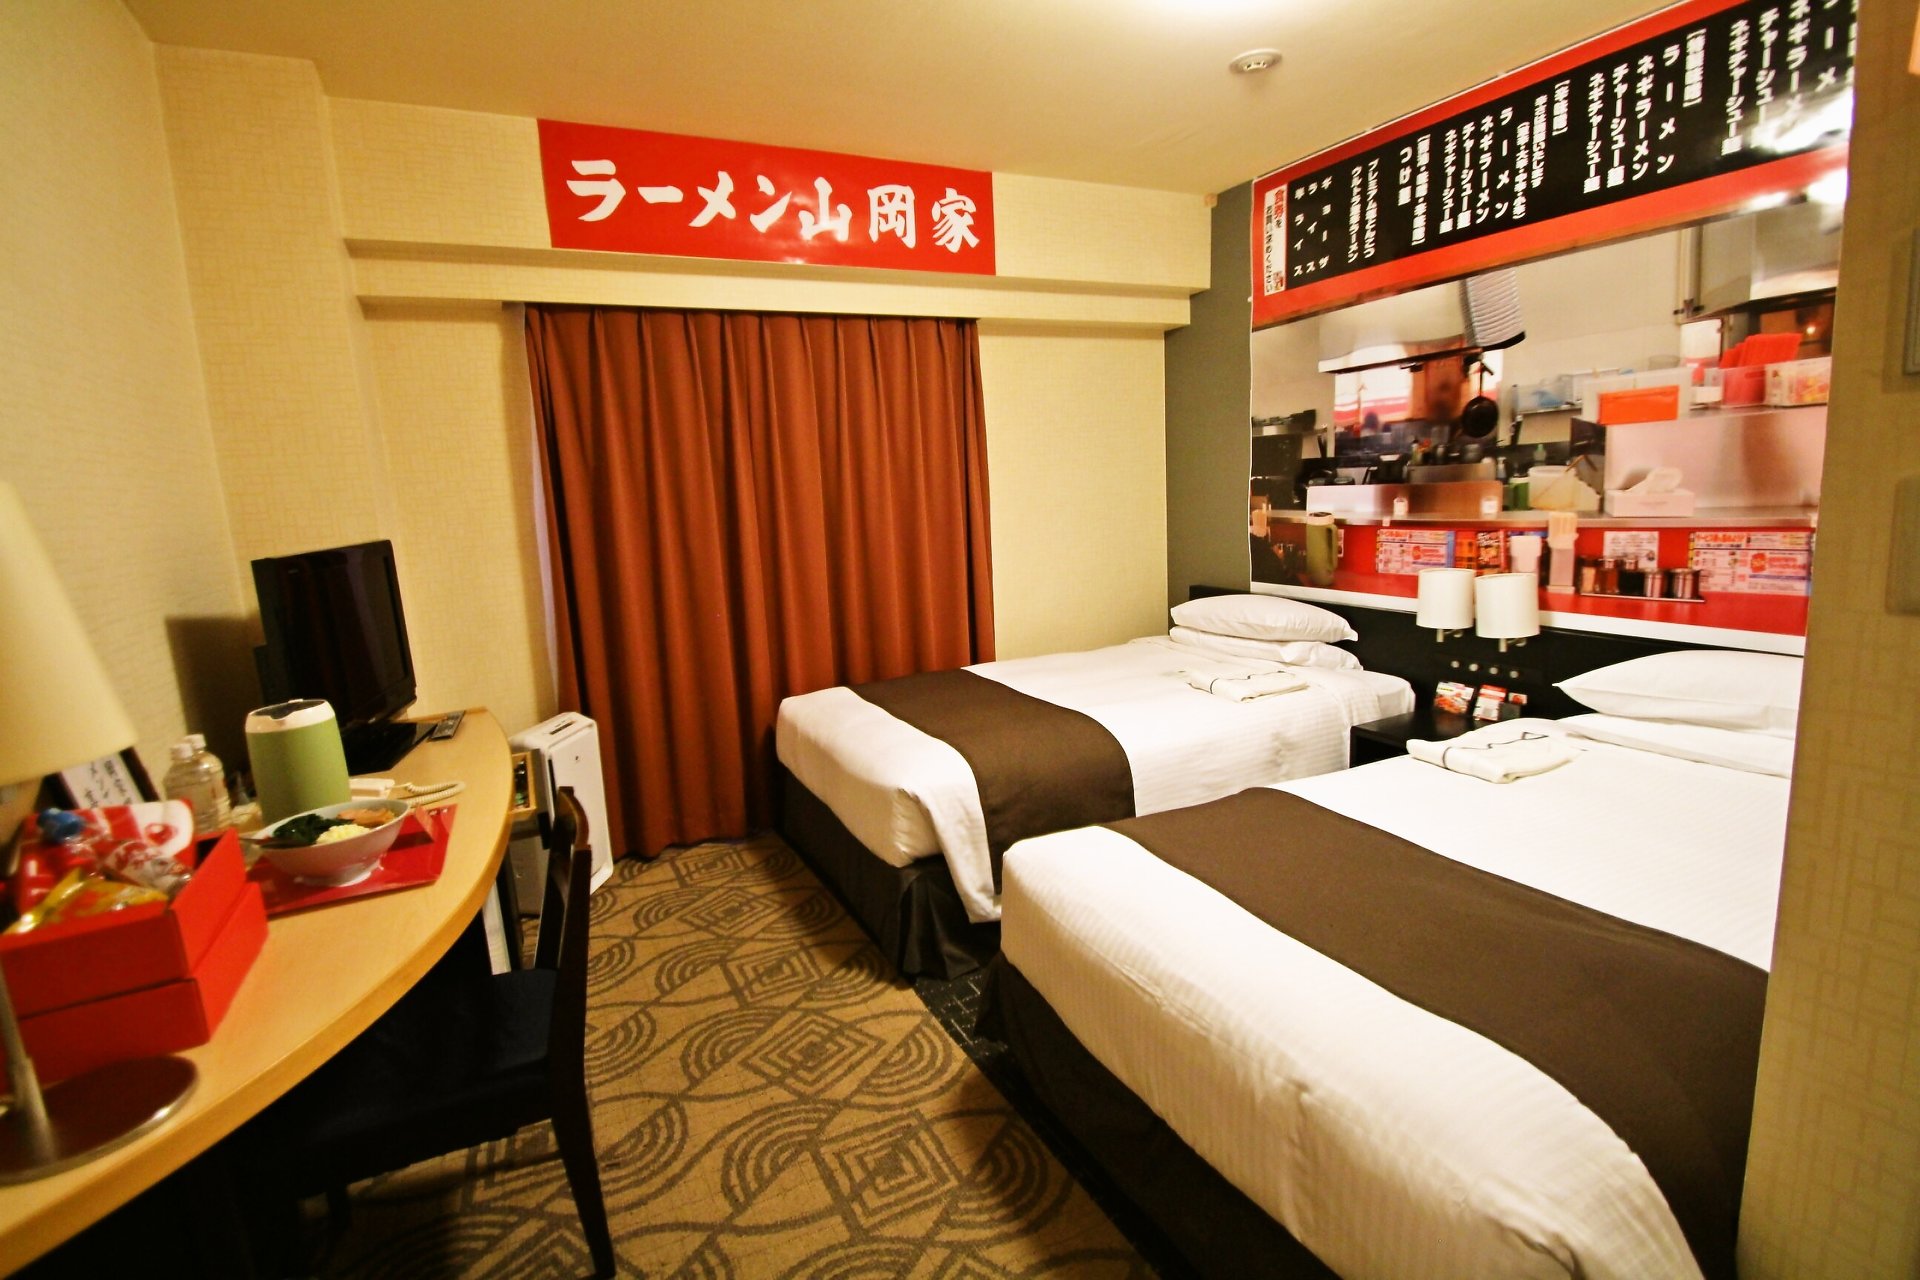 札幌東急REIホテル、ラーメン山岡家を再現した異色の宿泊プラン「山岡家部屋」を販売